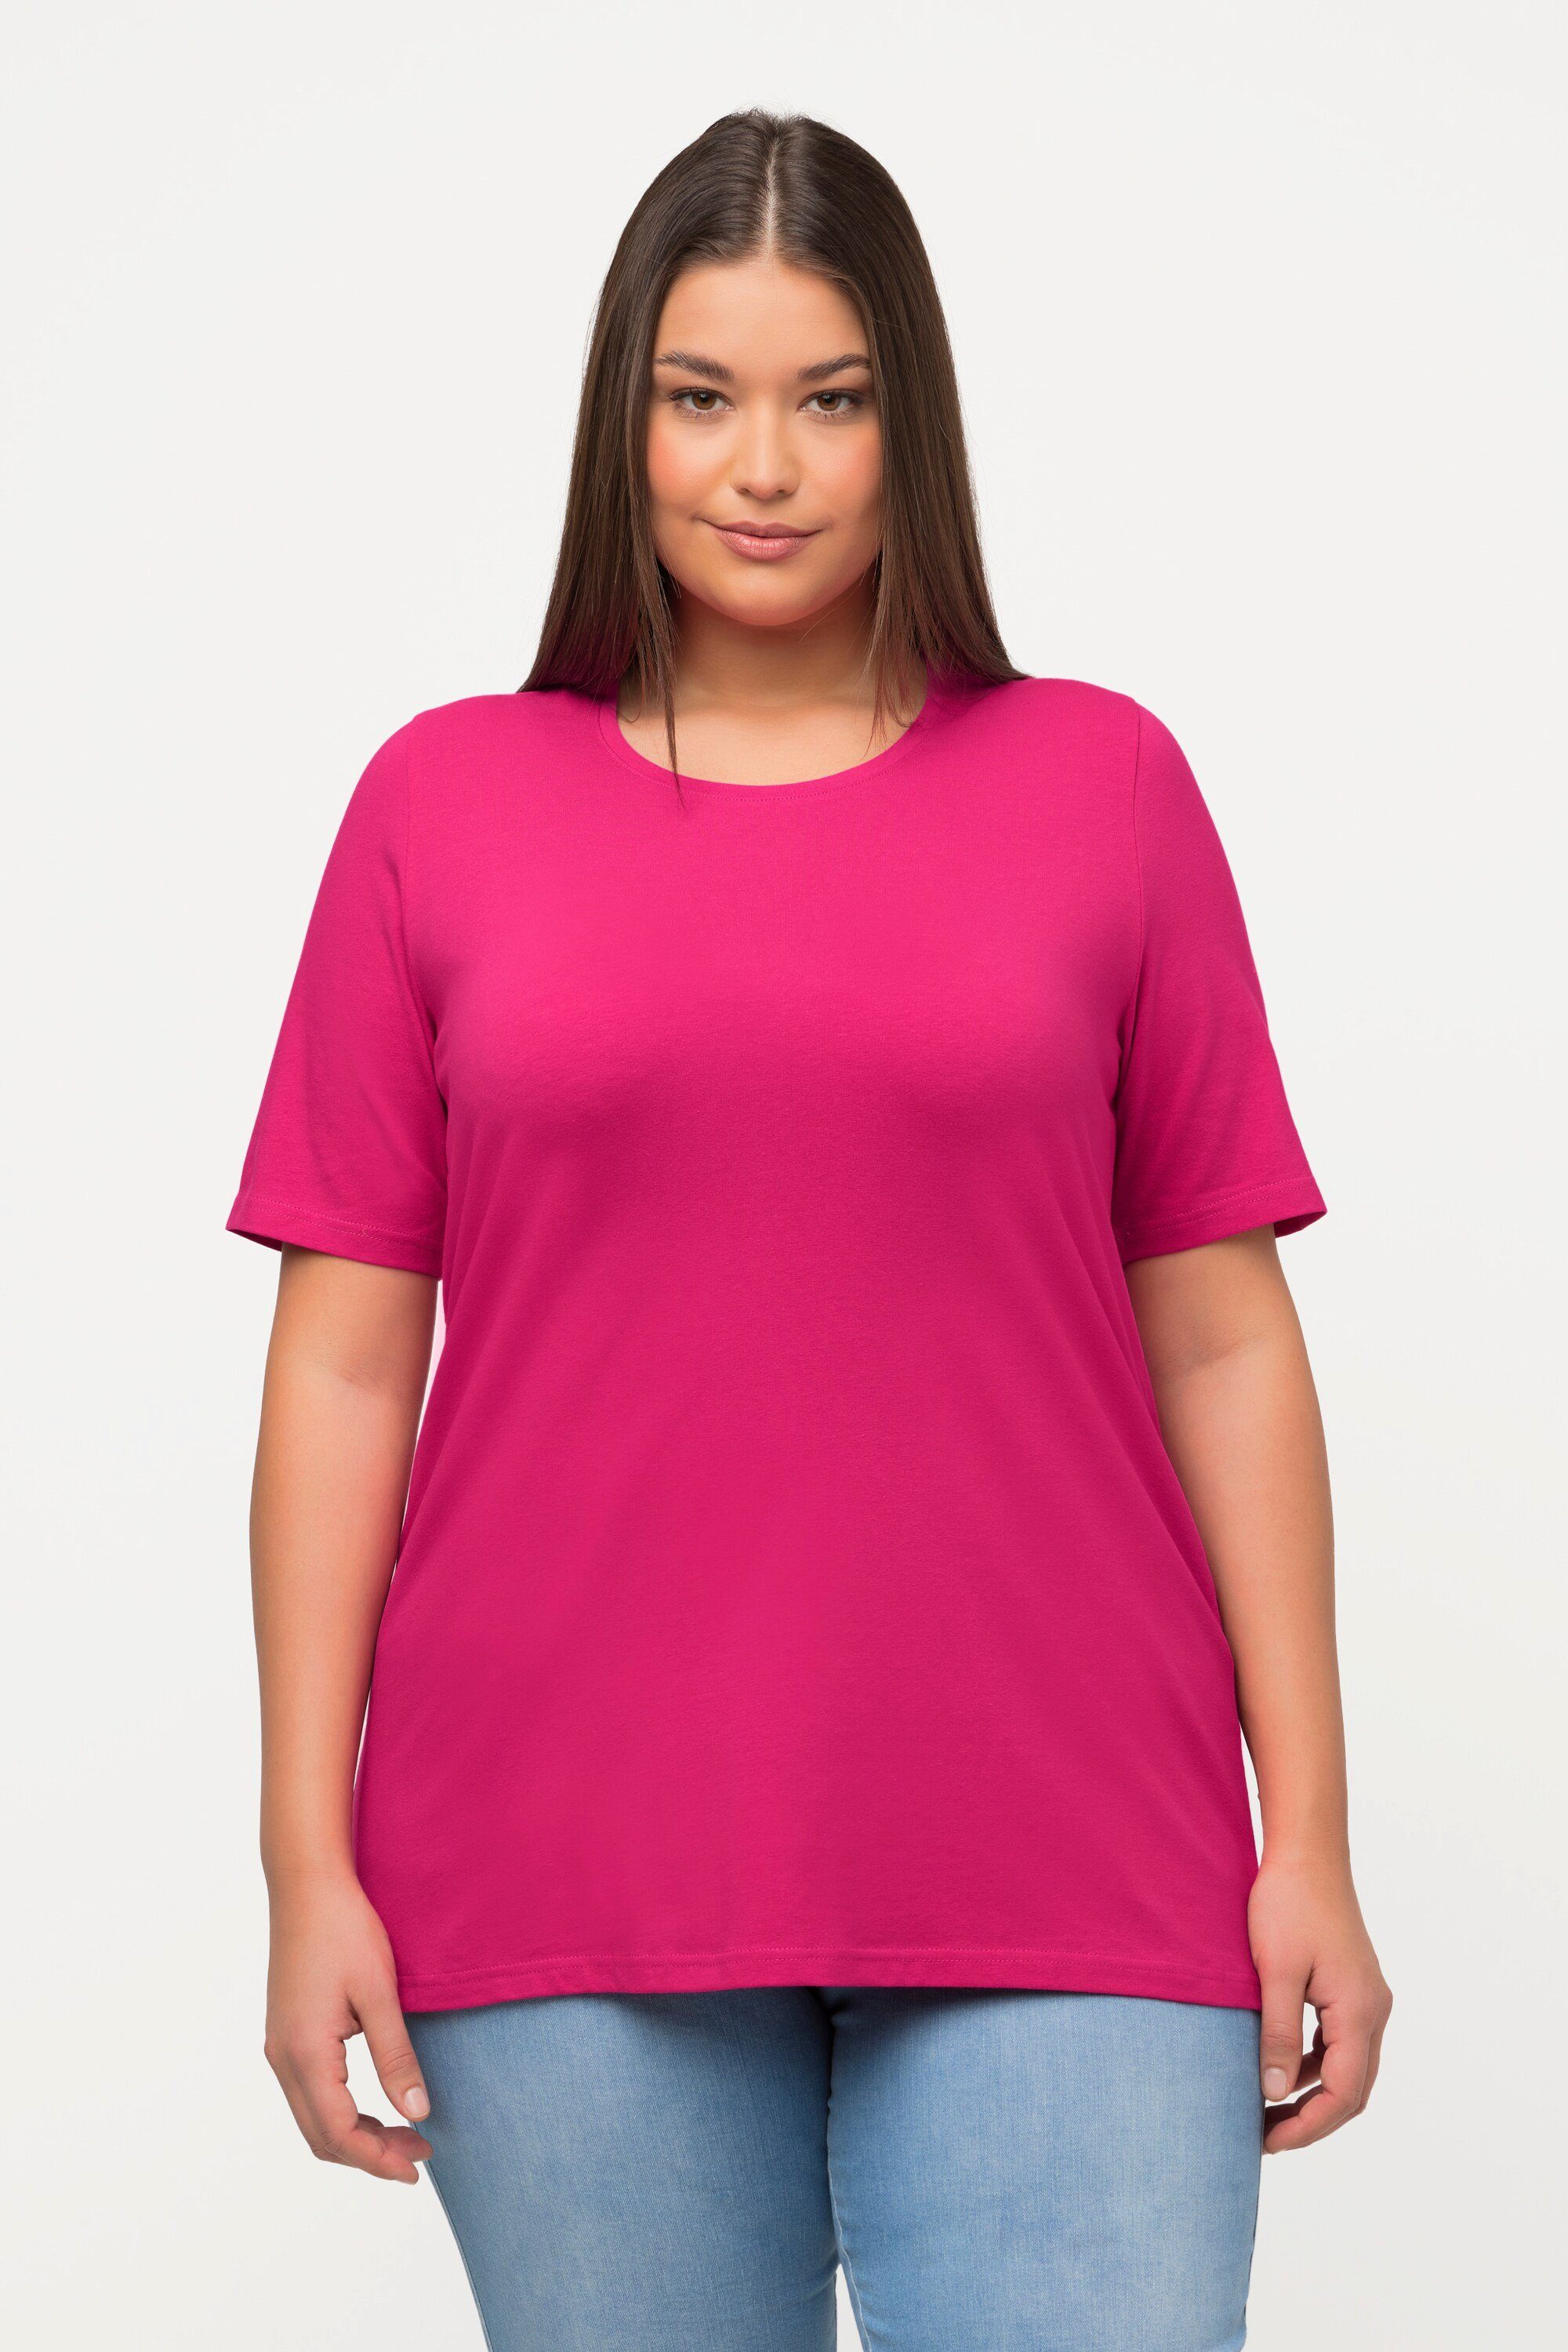 Rundhalsausschnitt T-Shirt Ulla pink Halbarm Rundhalsshirt A-Linie Popken fuchsia